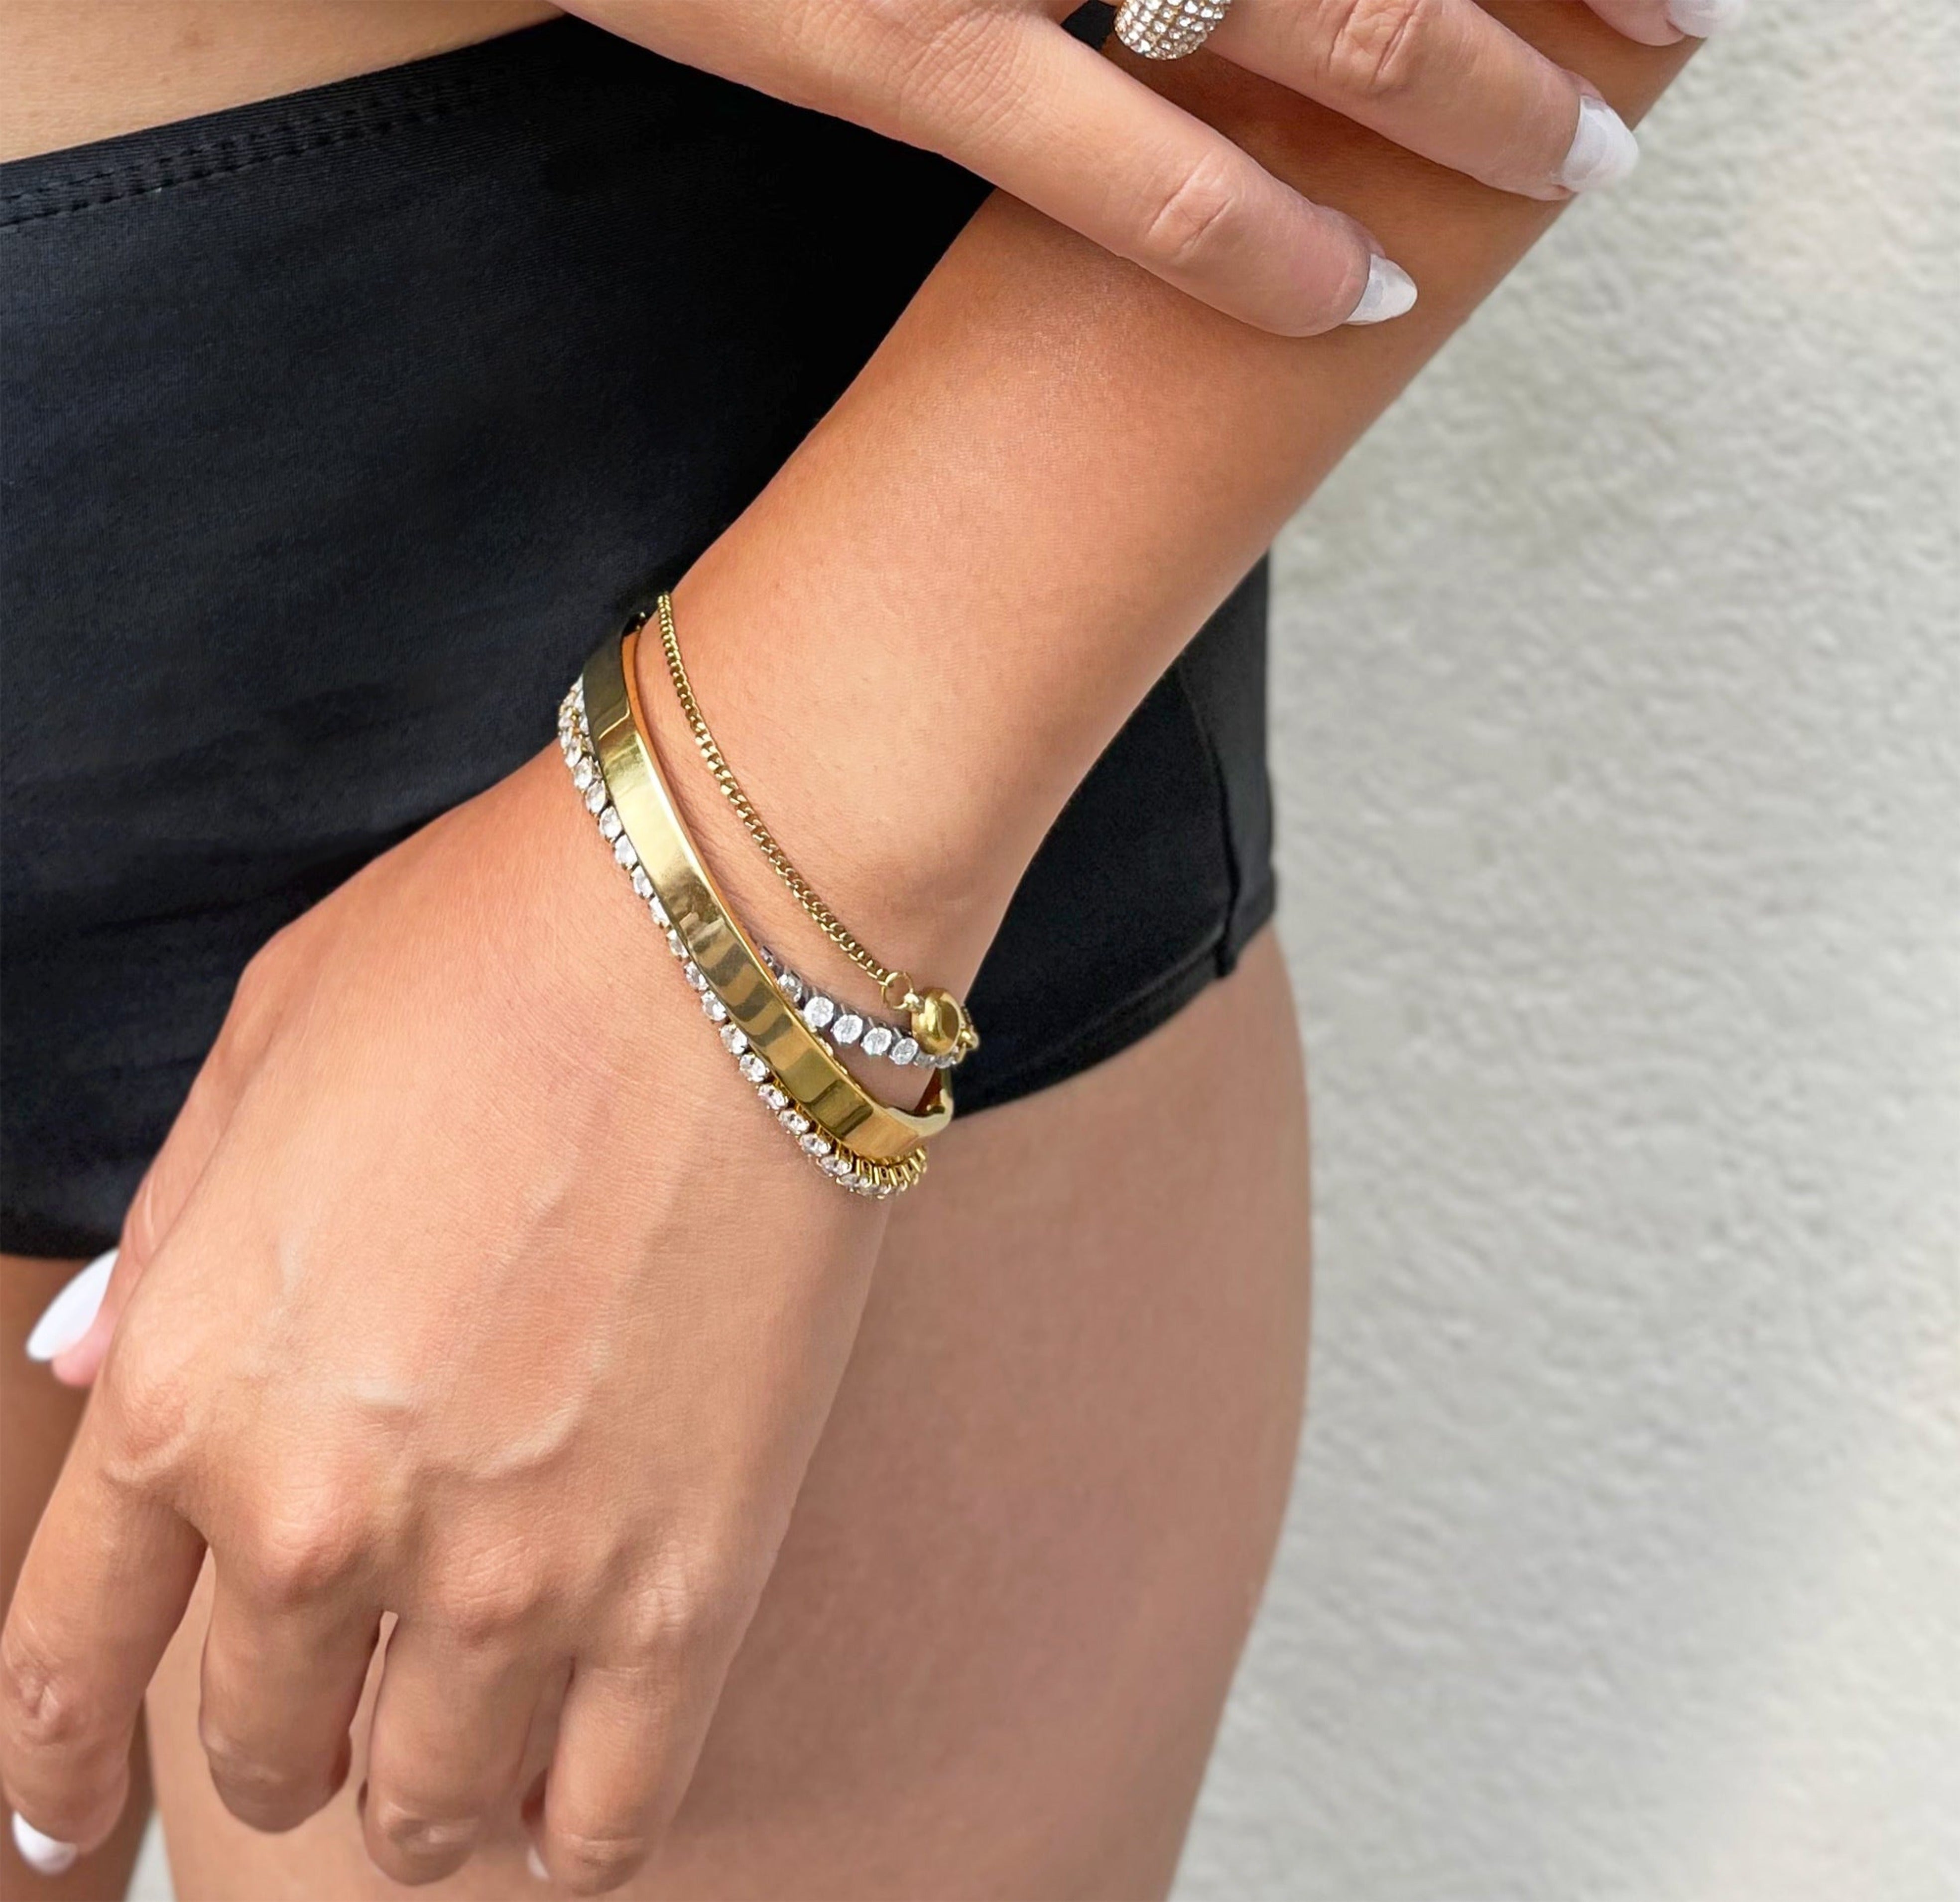 gold cuff bracelet waterproof jewelry